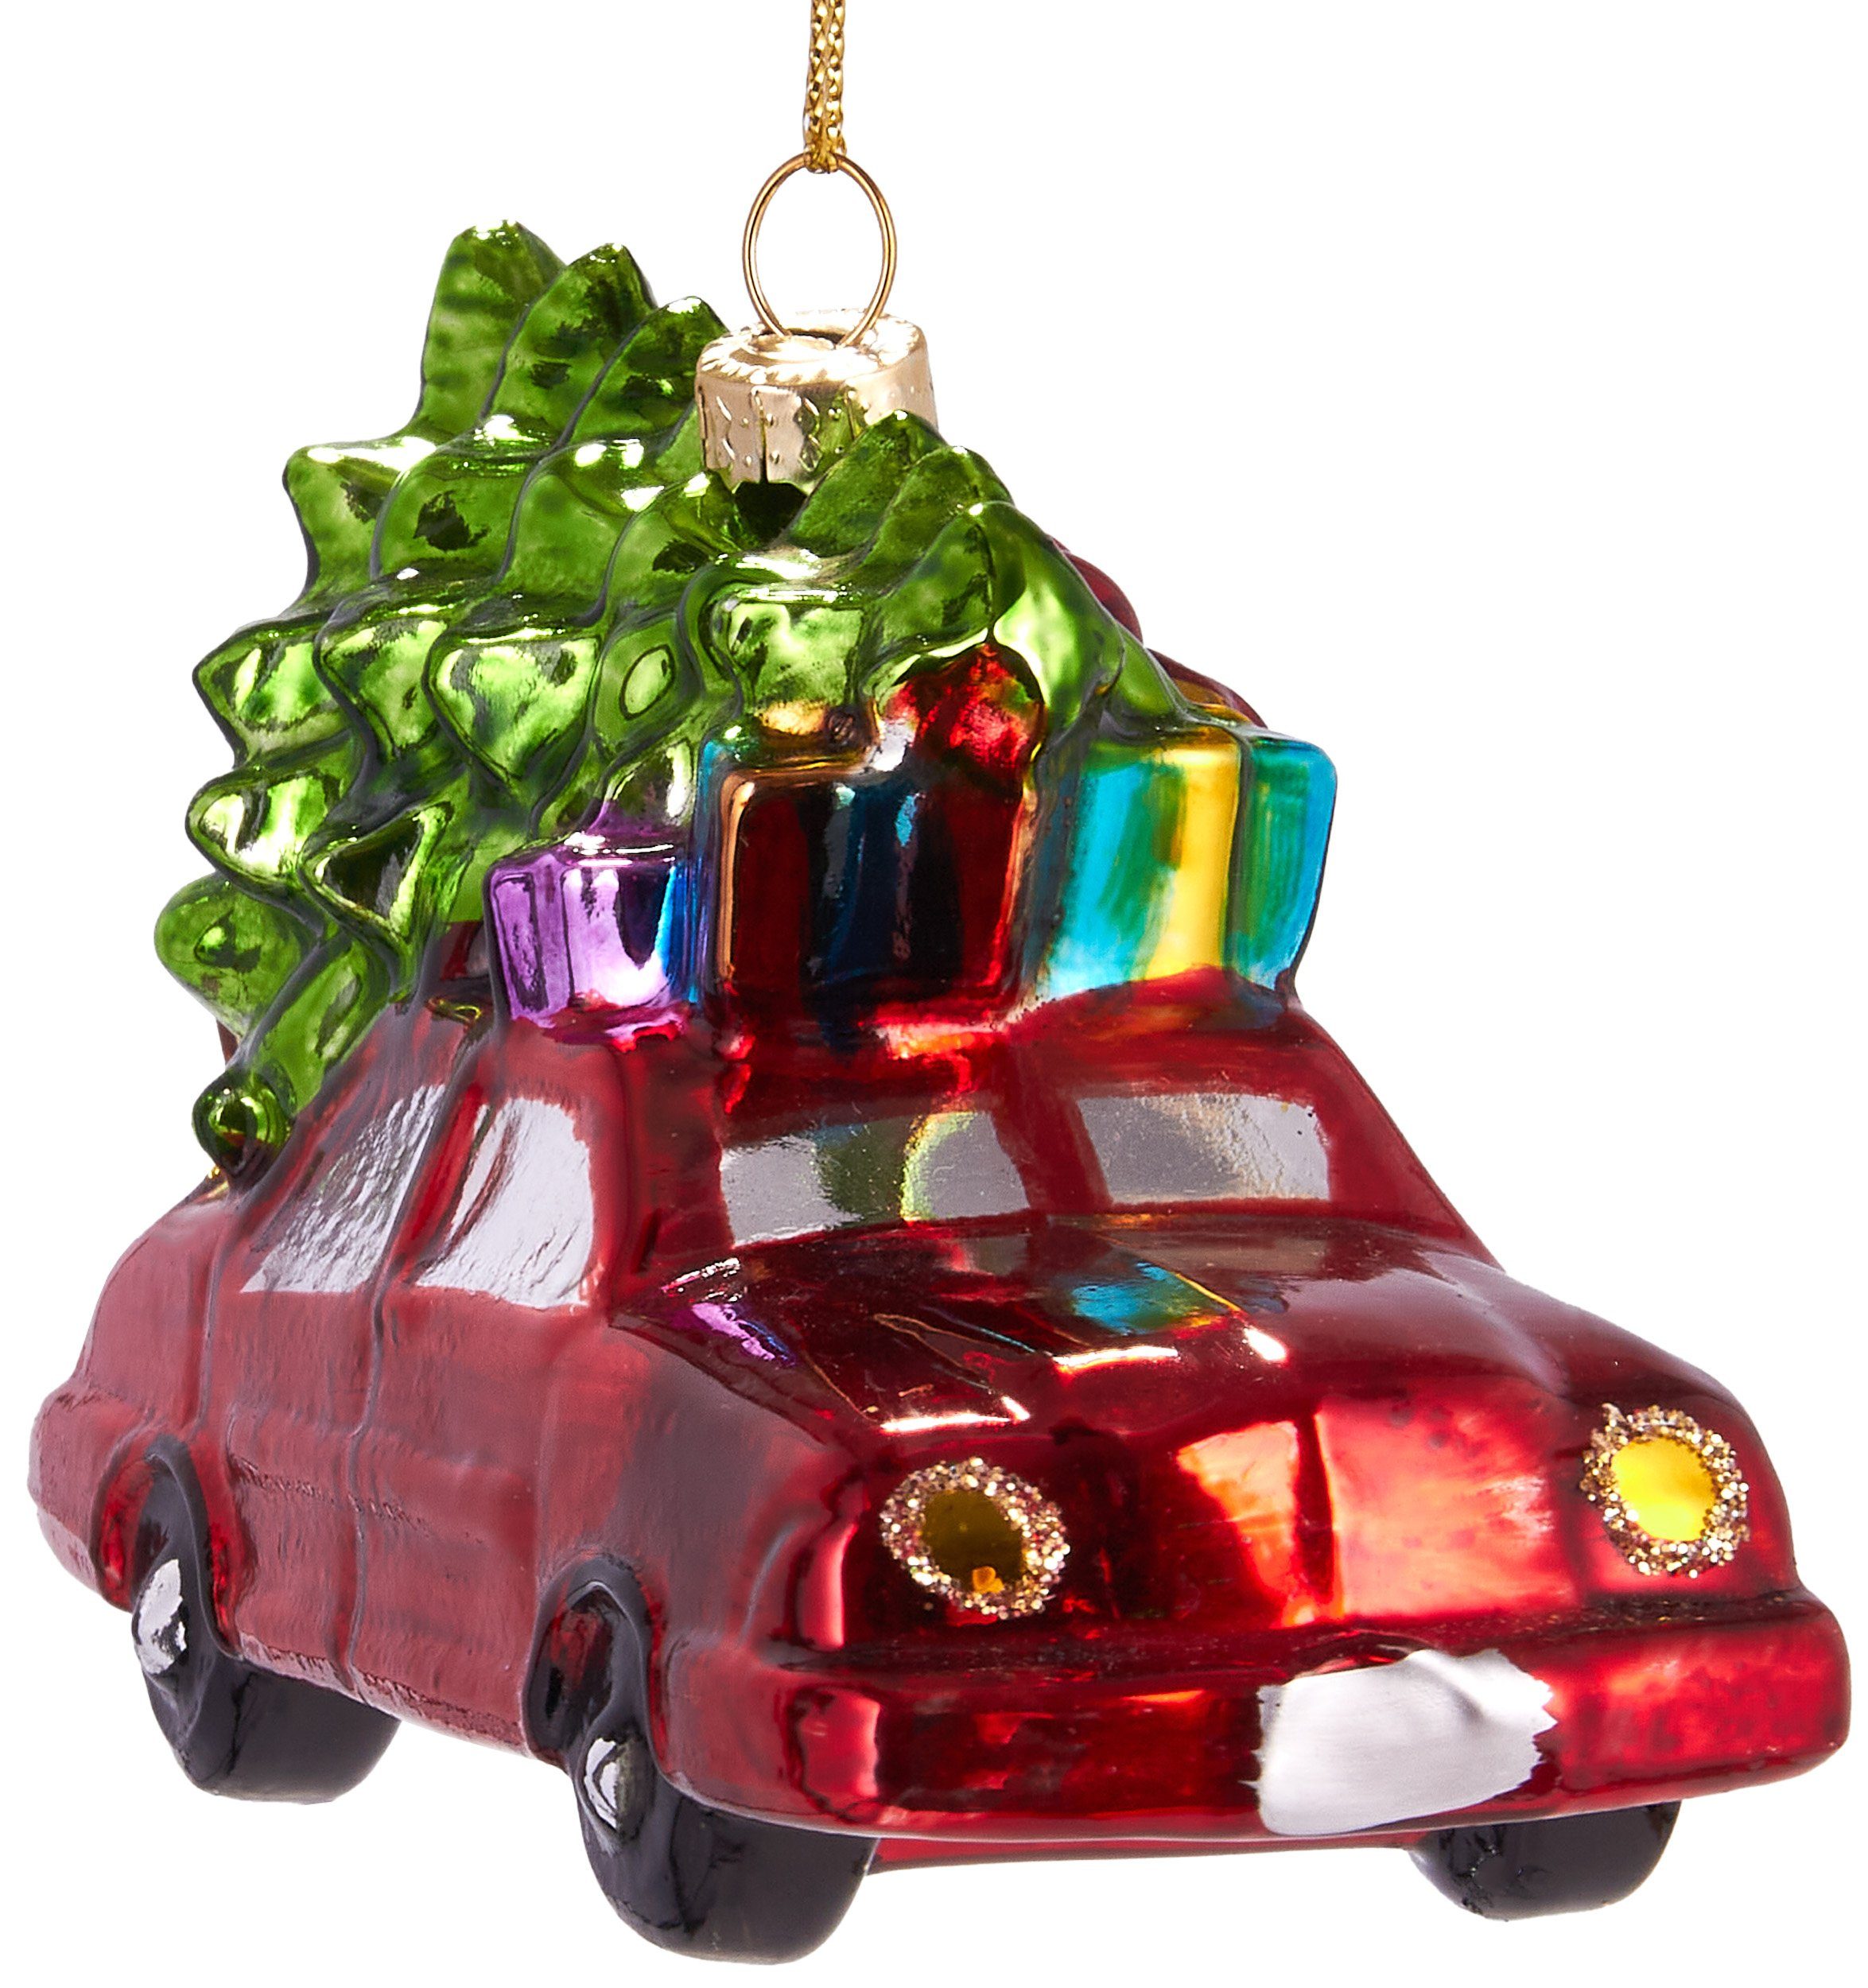 [Dieser Frühling/Herbst ist auch der beliebteste] BRUBAKER Christbaumschmuck Kunstvolle Baumkugel Auto Glas, aus Lustige Weihnachtskugel mit mundgeblasene cm Weihnachtsbaum, Weihnachtsdekoration handbemalt 12 ca. 